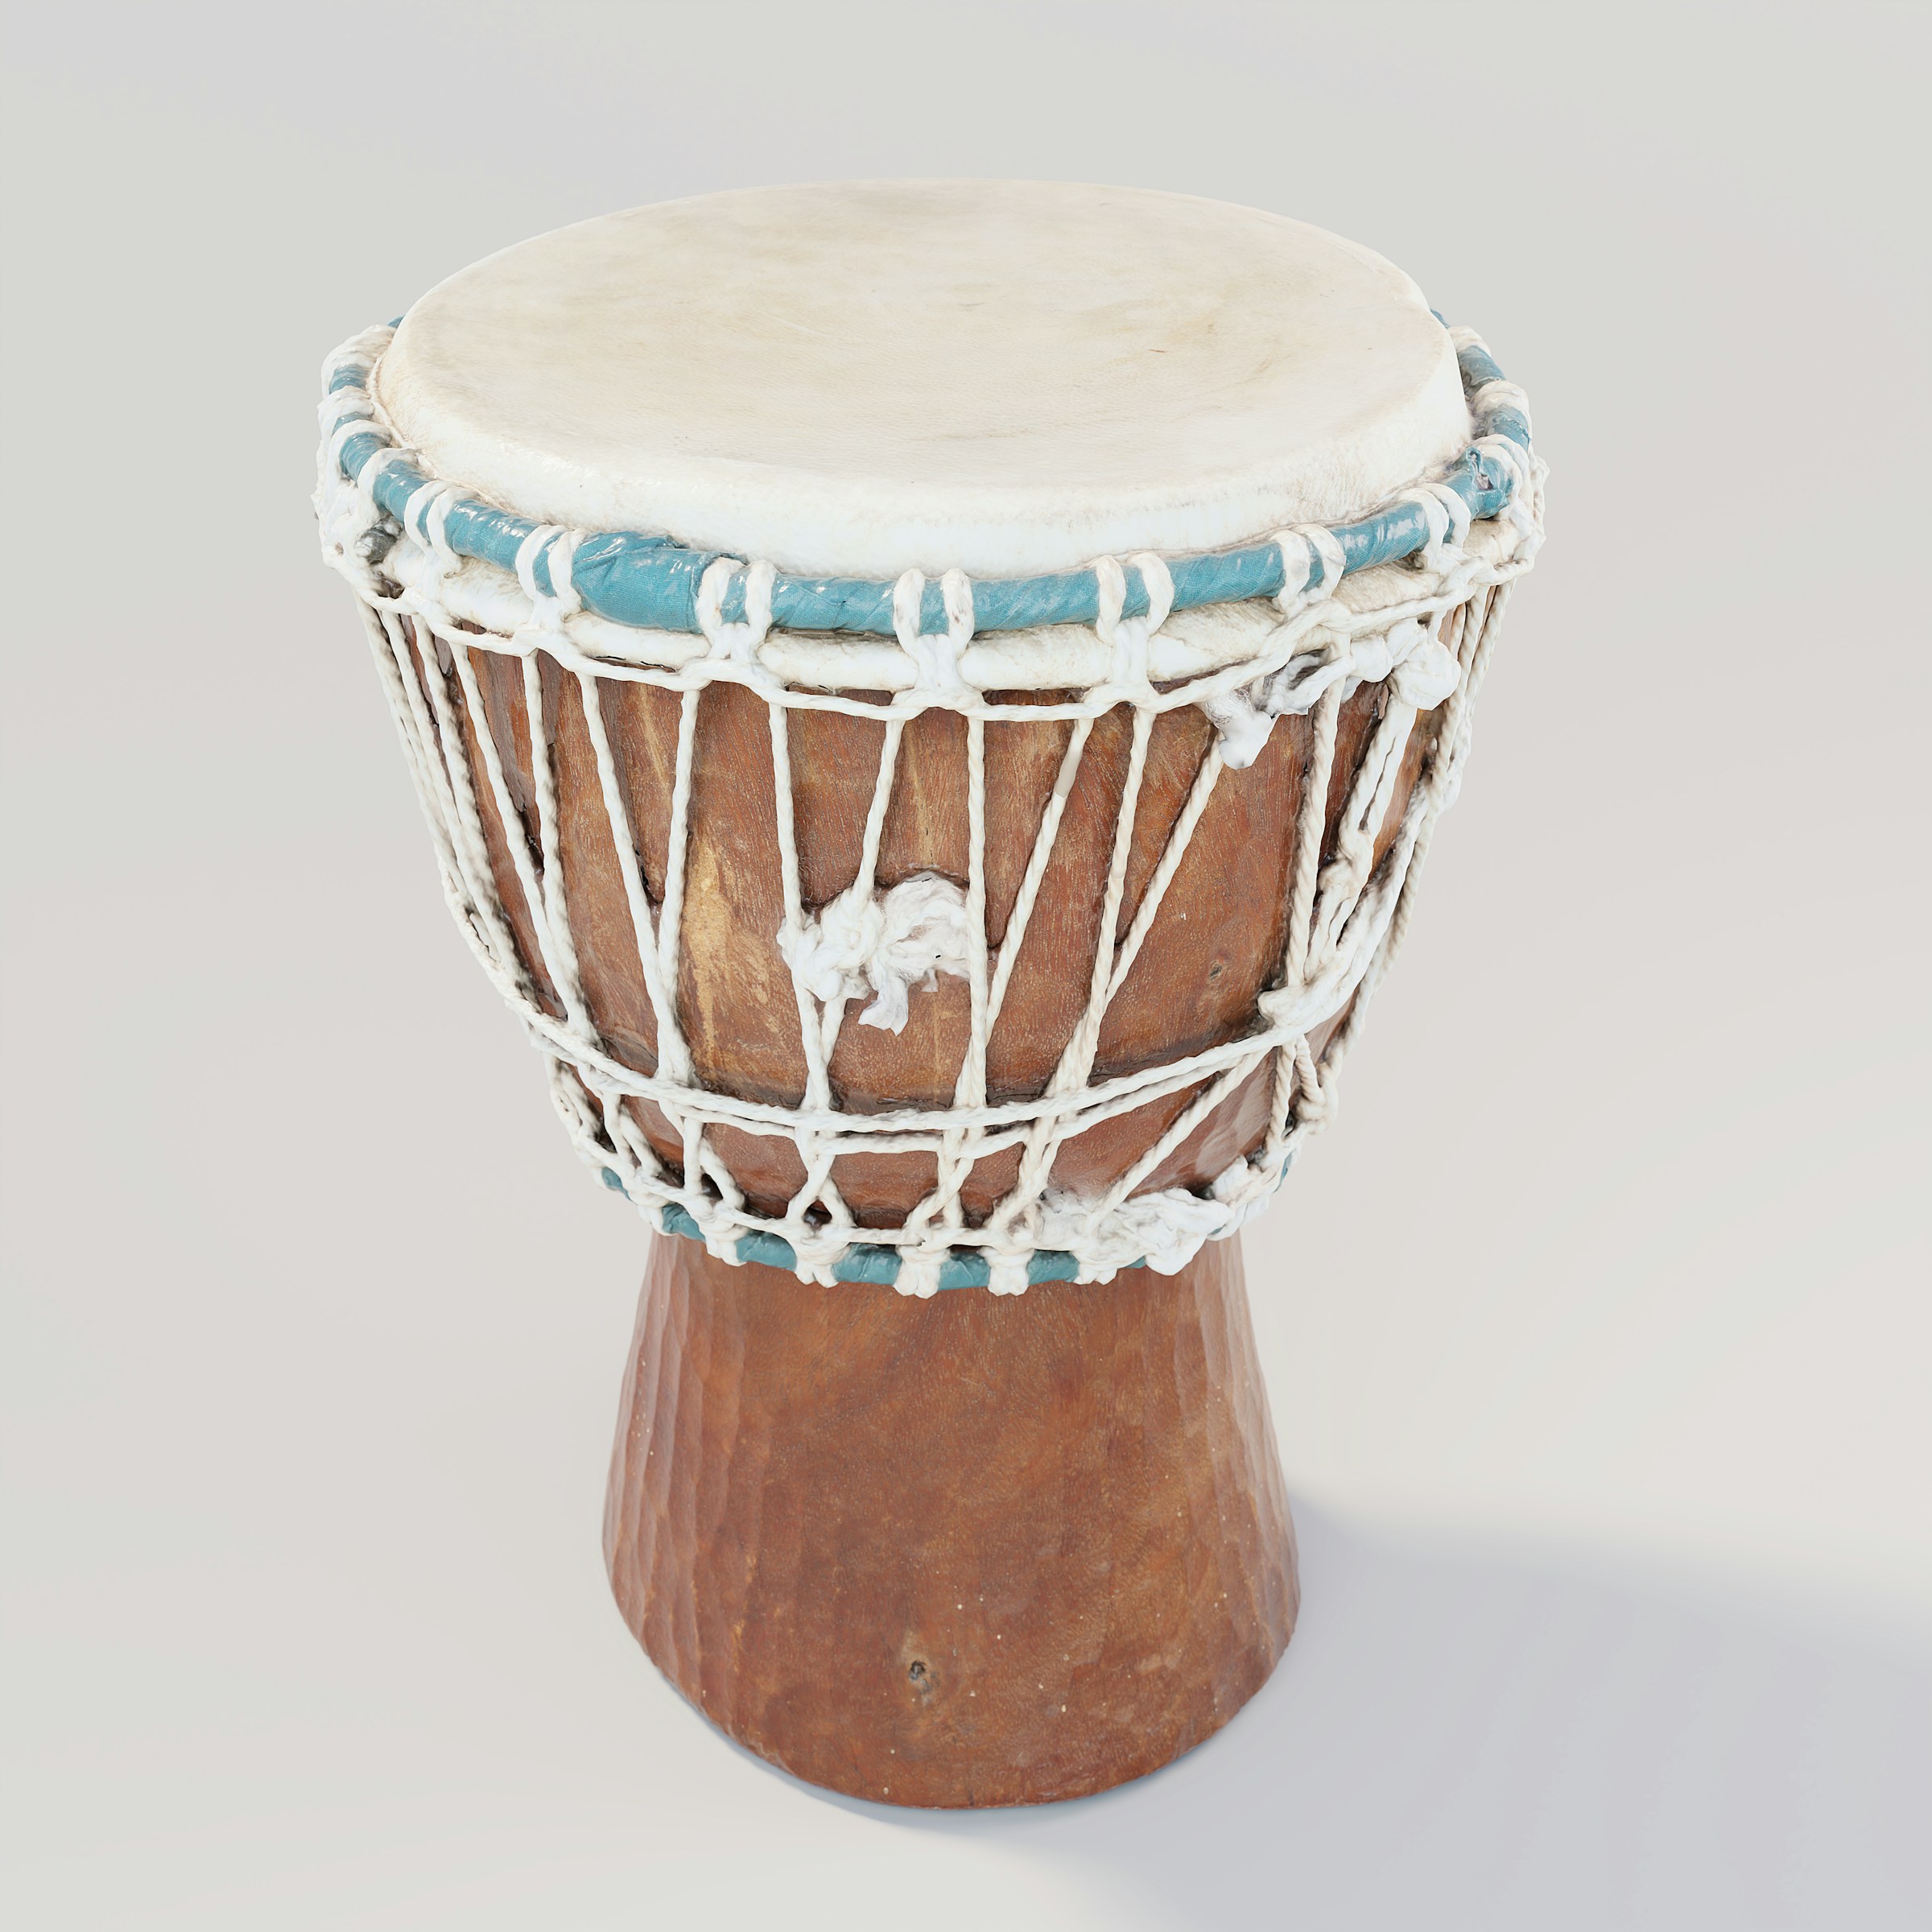 A wooden drum | Source: Unsplash